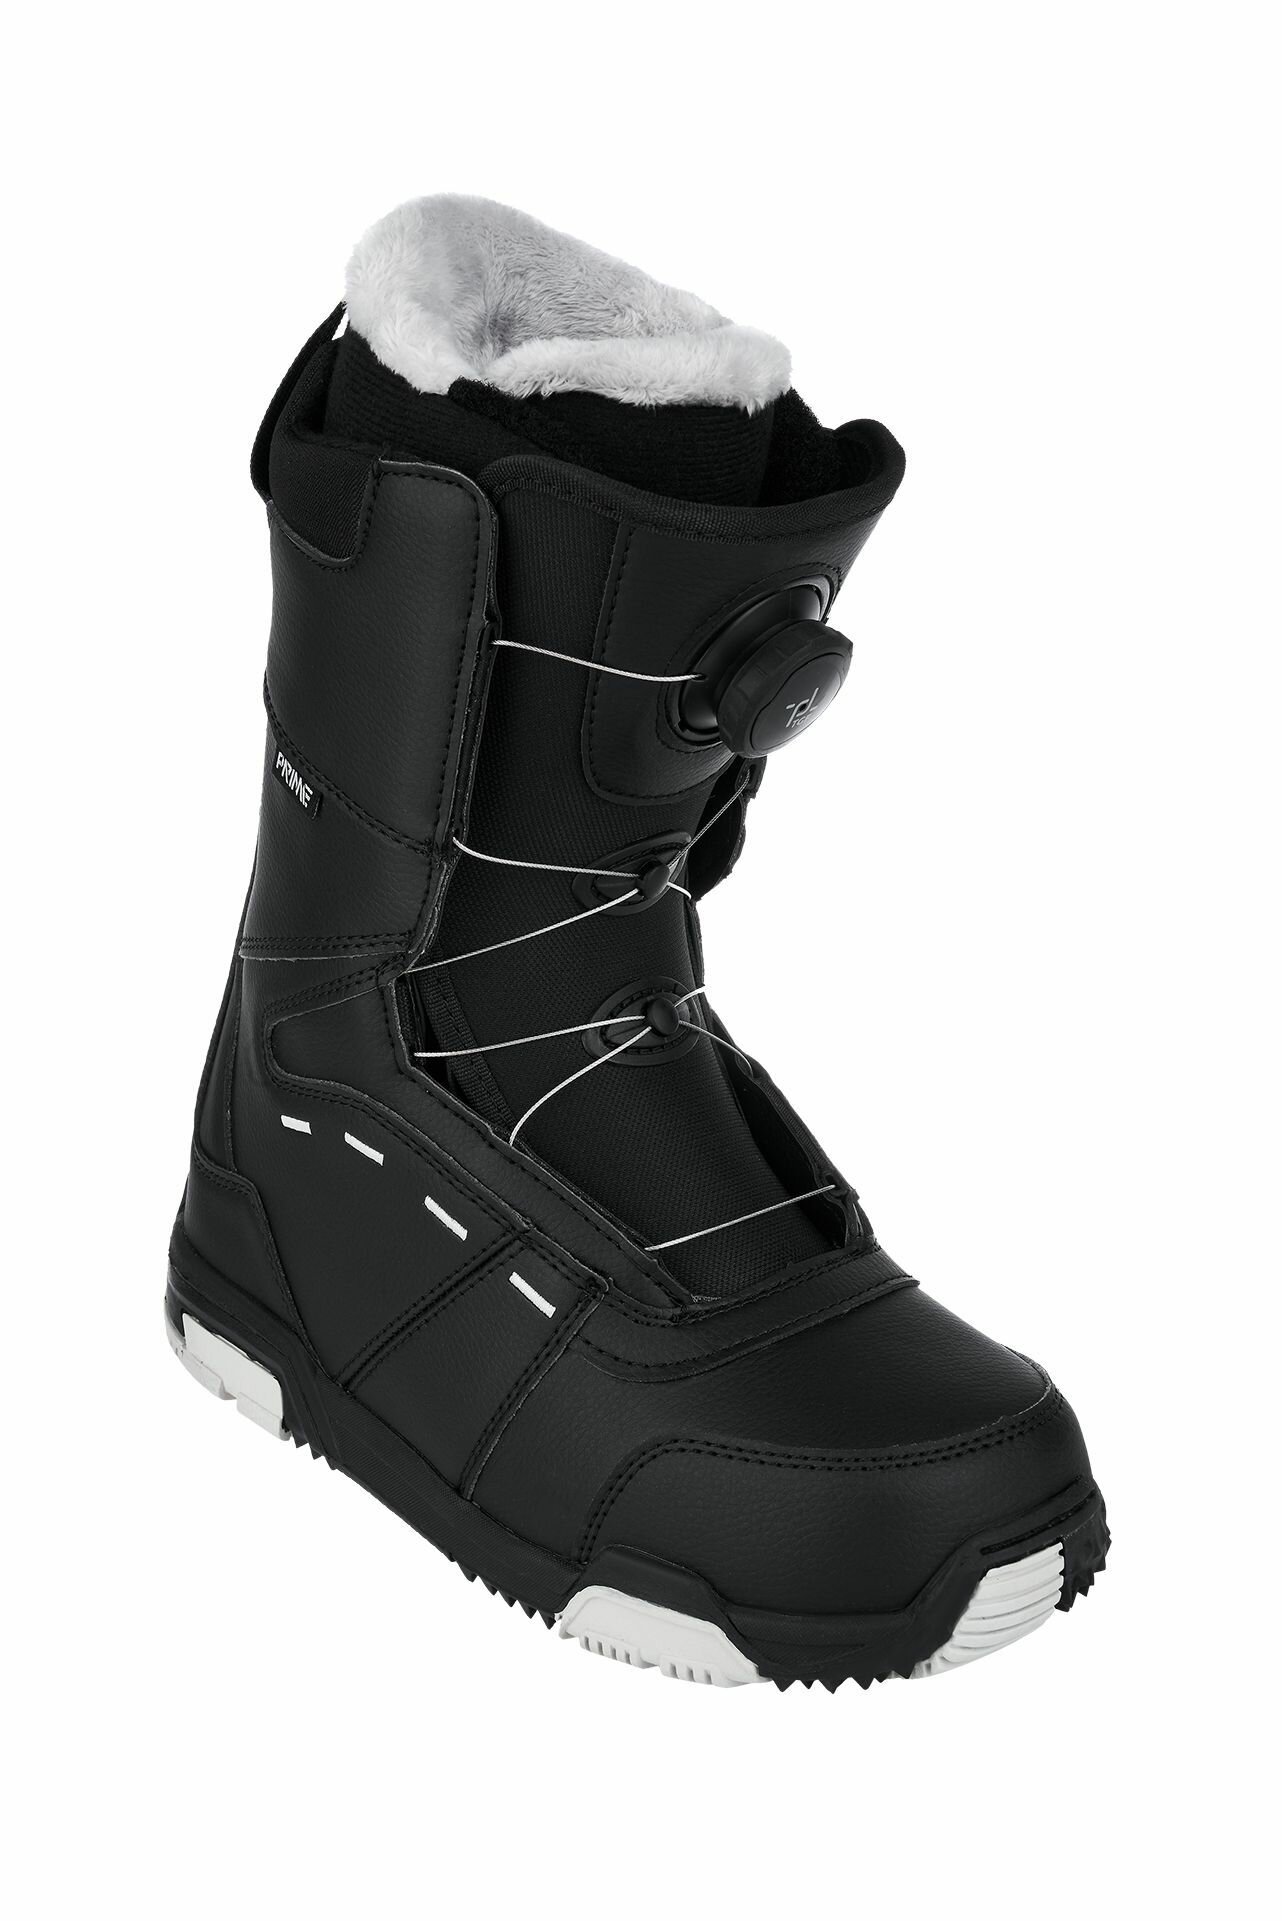 Ботинки сноубордические PRIME COOL-C1 TGF Black (быстрая шнуровка) (42 RU / 28 cm)